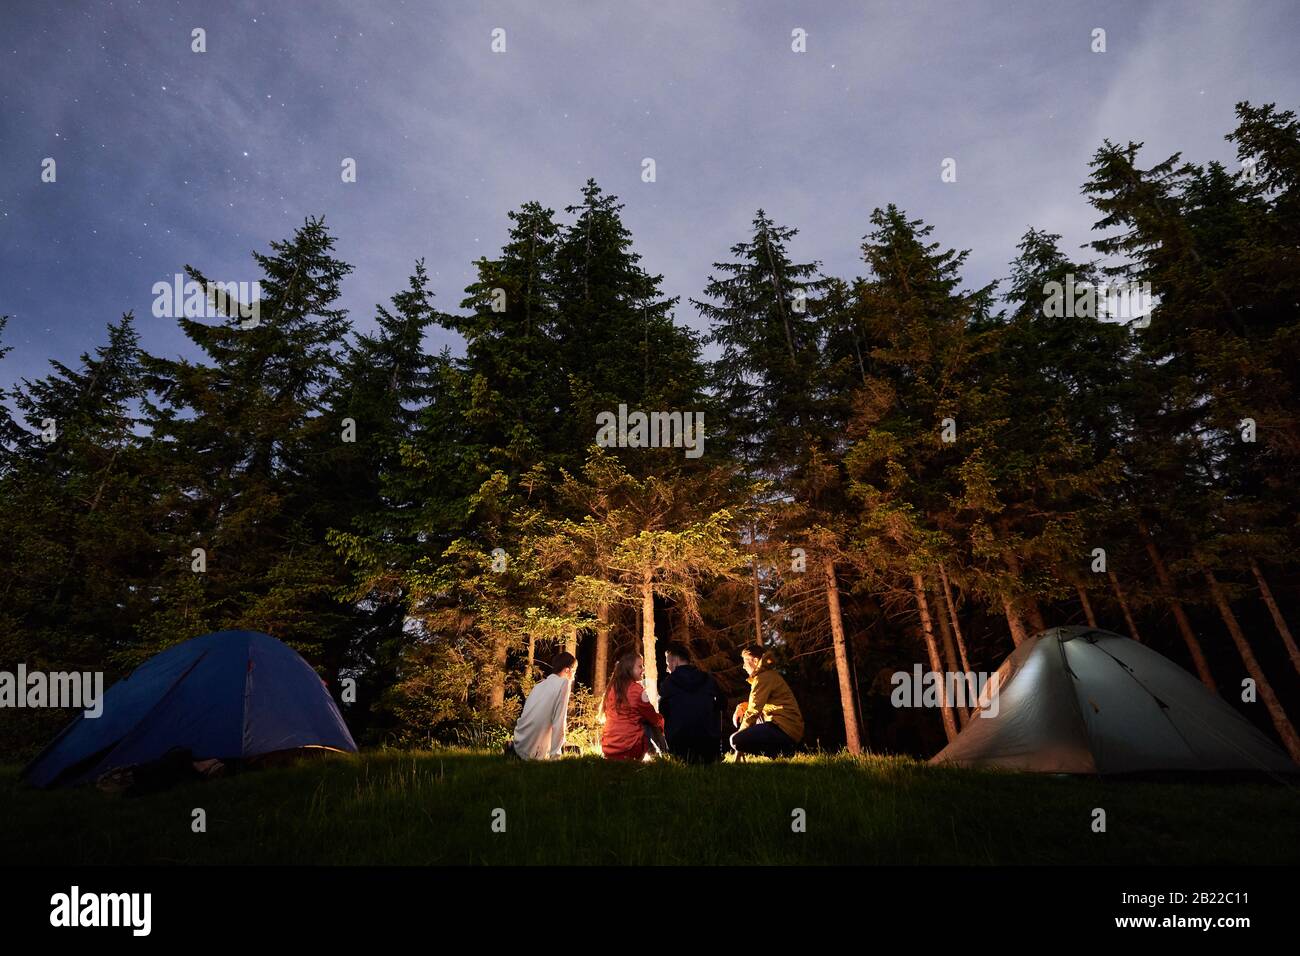 Nachtcamping in der Nähe von Lagerfeuer vor dem Hintergrund eines mächtigen Waldes. Vier Personen sitzen in der Nähe von Feuer- und Touristenzelten. Schöne Fichten unter dem Abendhimmel, auf dem die Sterne auftauchen Stockfoto